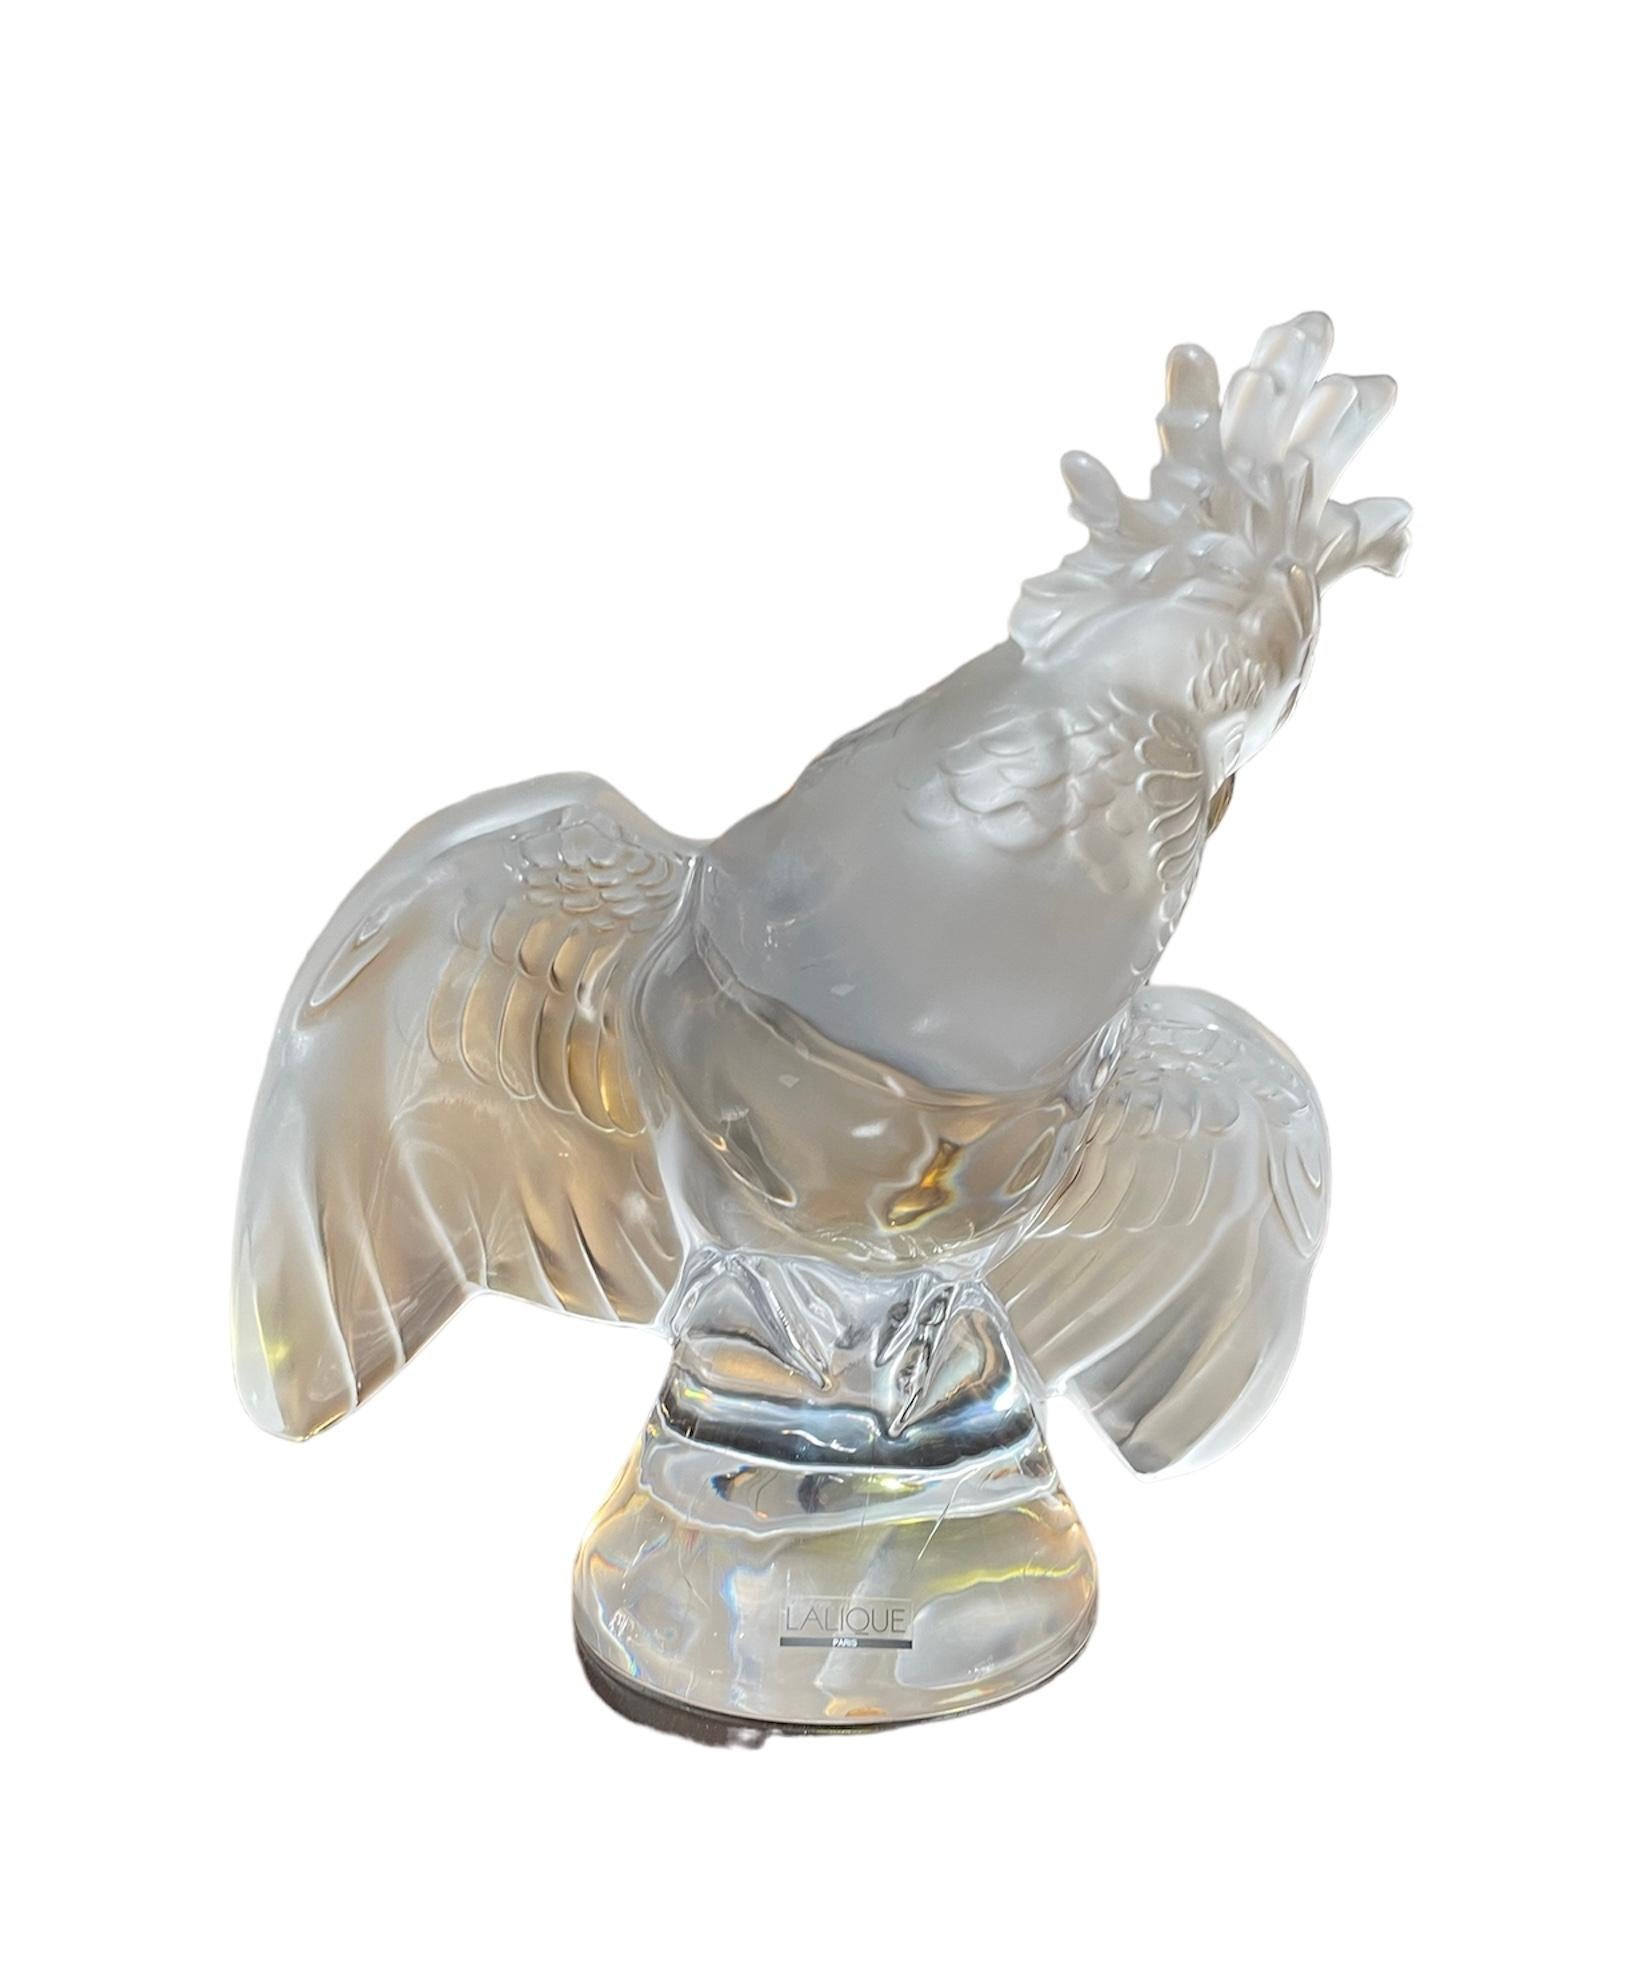 Il s'agit d'une sculpture en cristal de Lalique représentant un cockatiel. Il représente un cockatiel aimant en cristal givré et clair cherchant un propriétaire affectueux, debout sur une base conique en cristal clair. Il est poinçonné Lalique